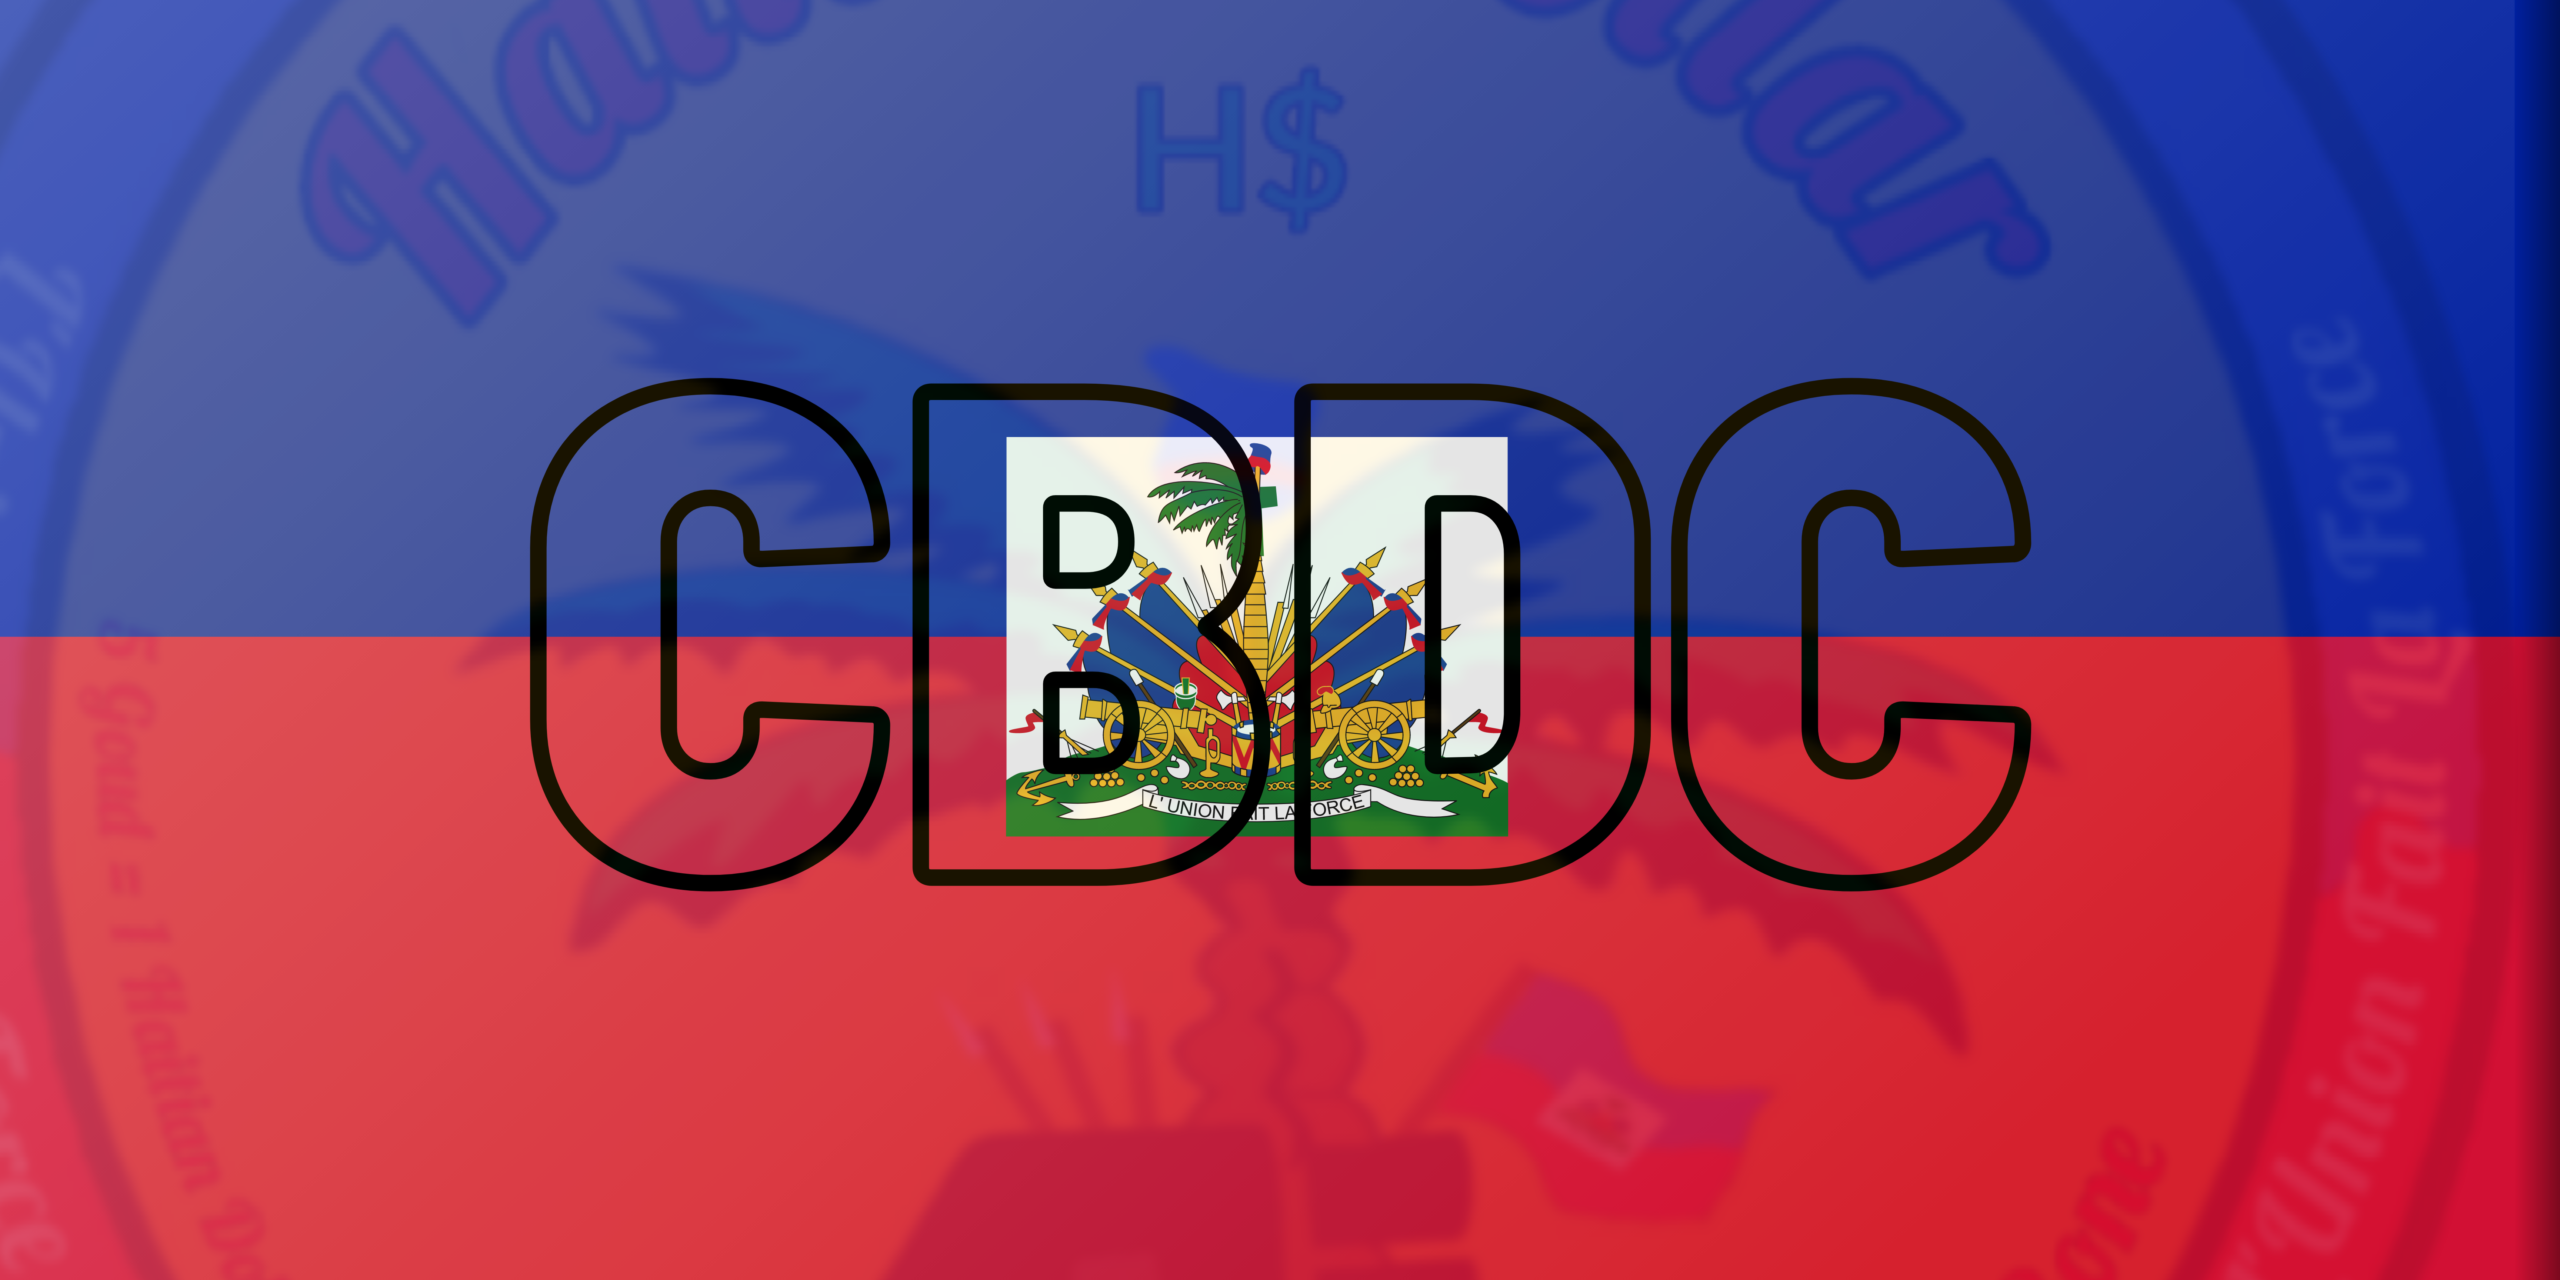 Haiti CBDC